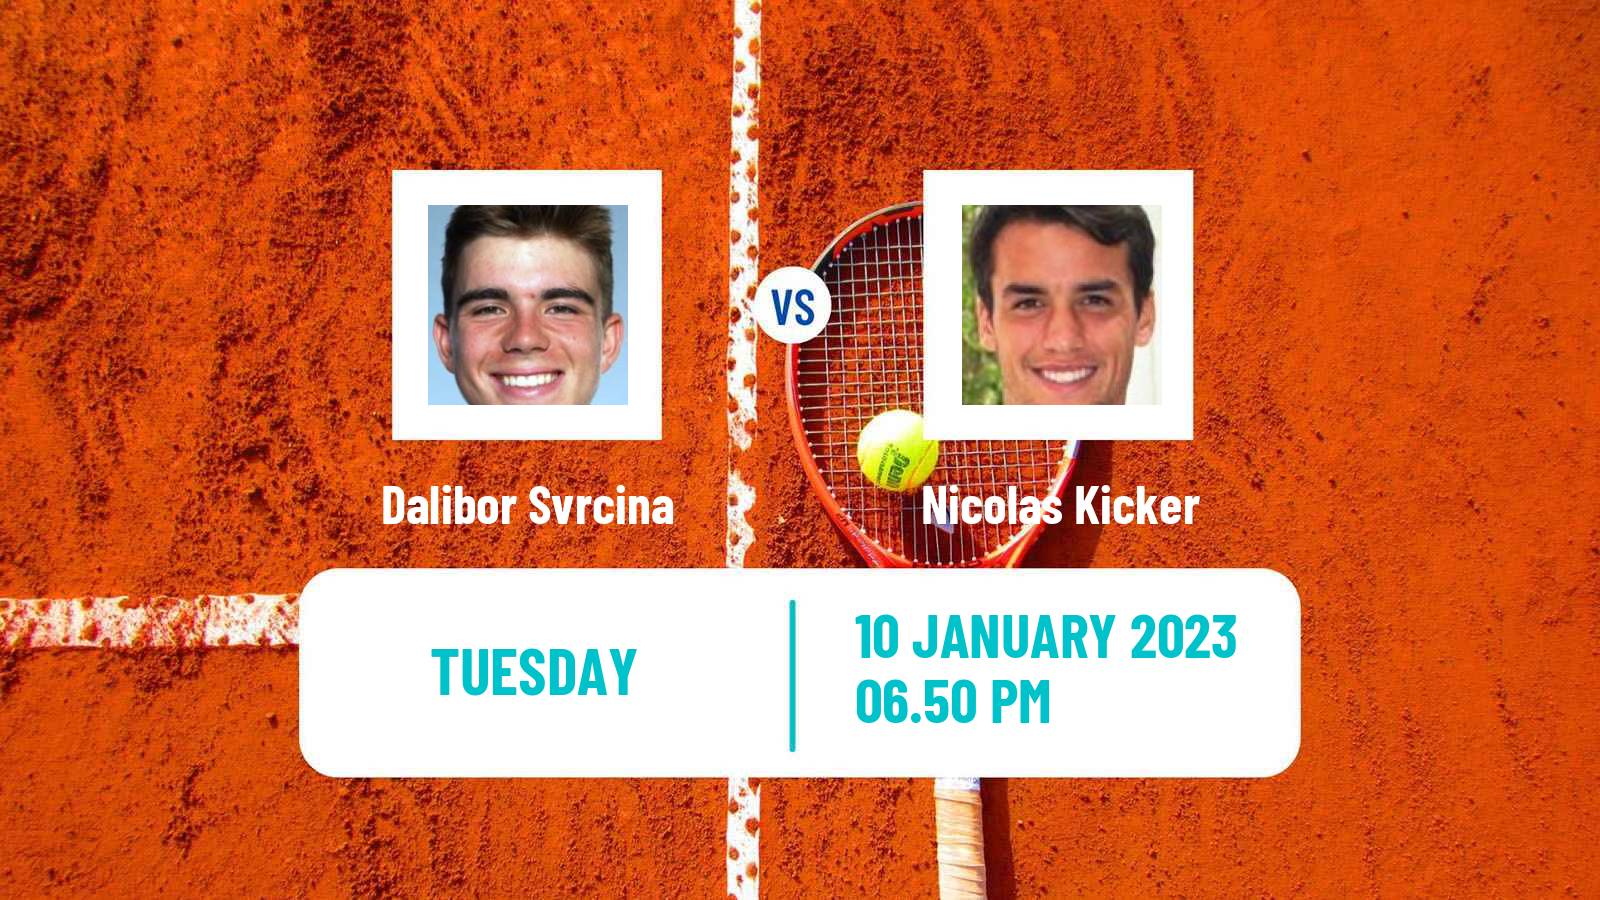 Tennis ATP Australian Open Dalibor Svrcina - Nicolas Kicker